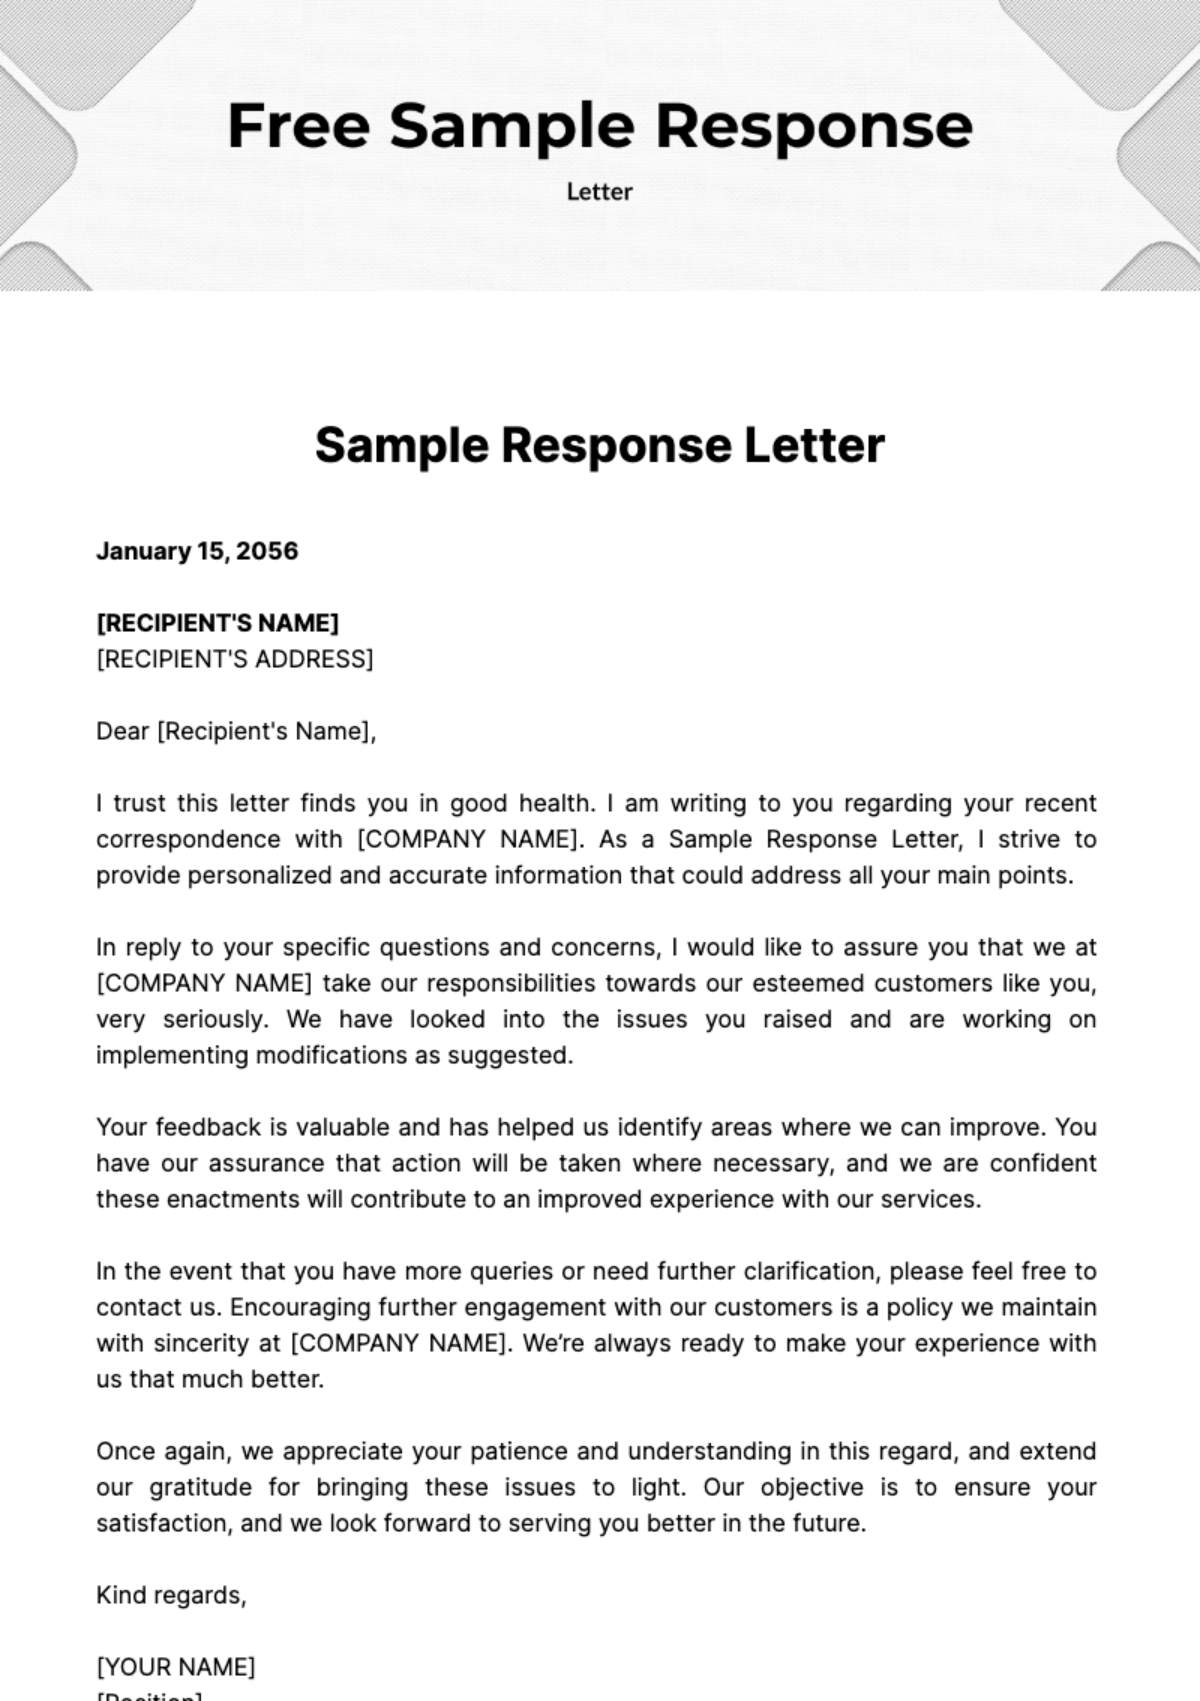 Sample Response Letter Template